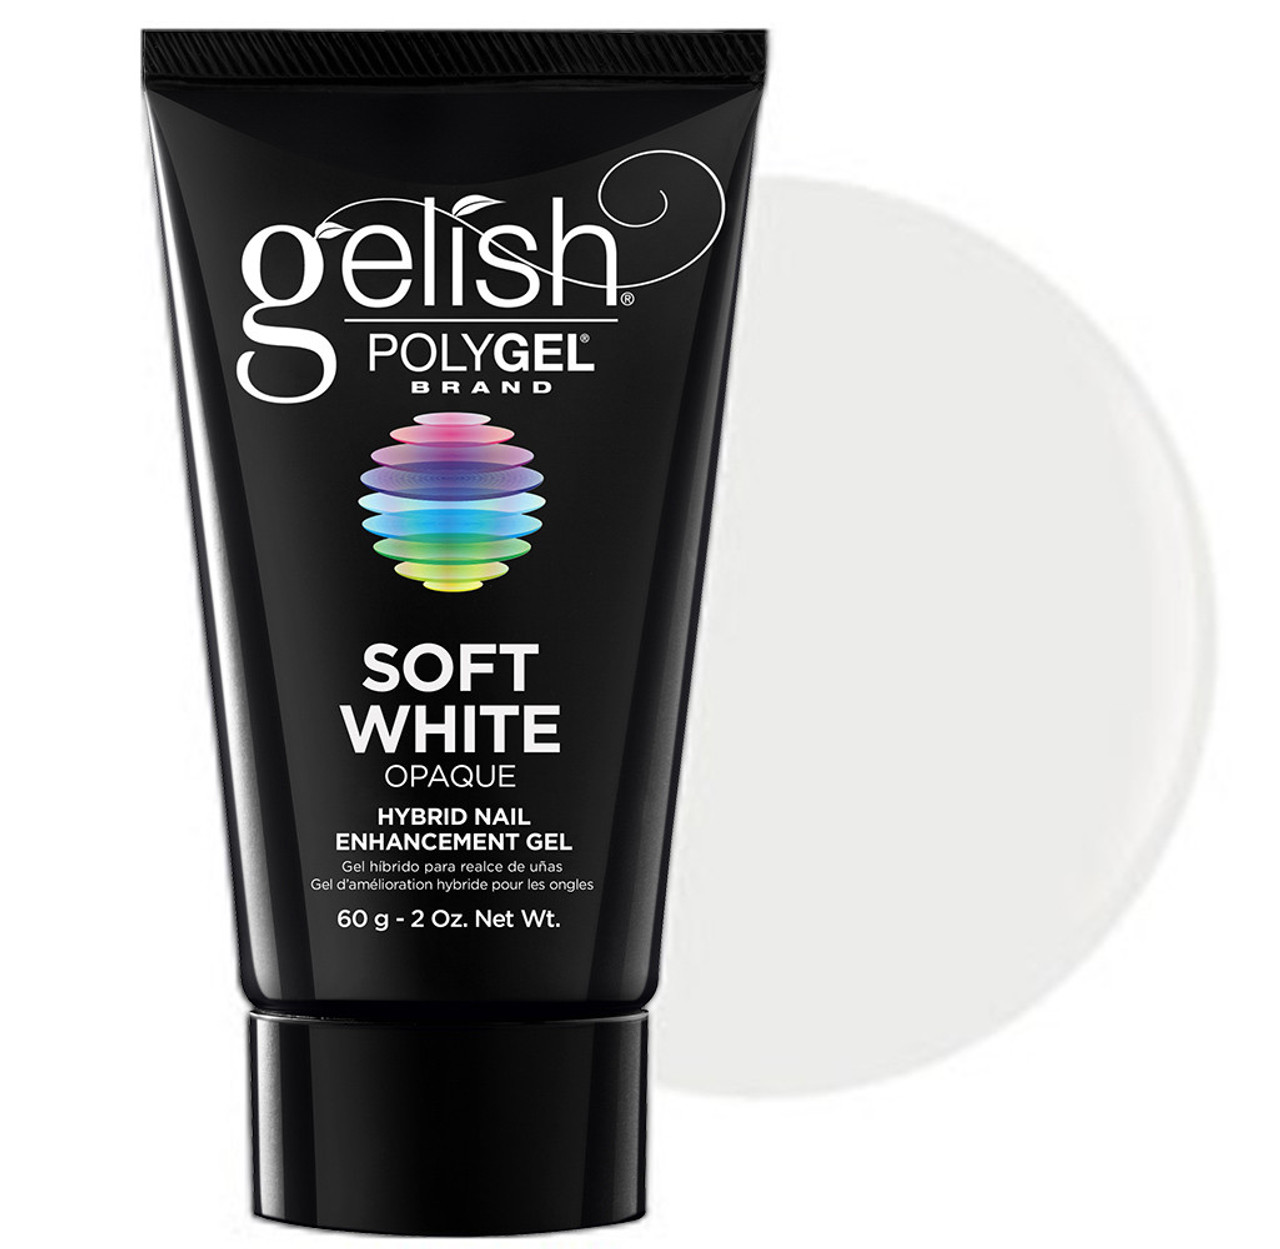 Gelish POLYGEL Nail Enhancement Soft White - 2 oz / 60 g **No Box